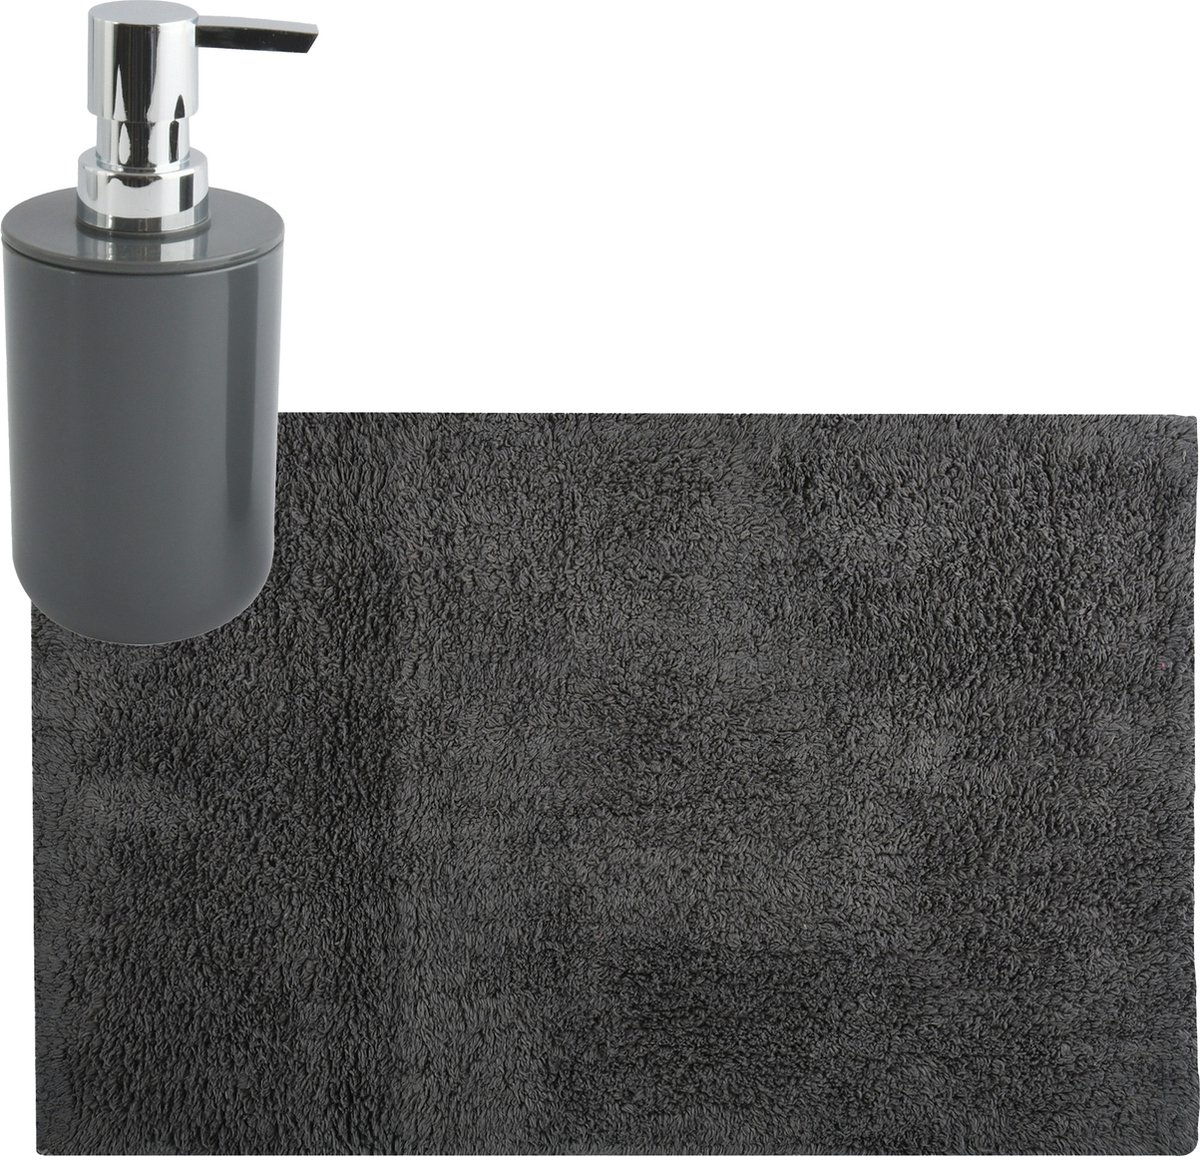 MSV badkamer droogloop mat tapijt 40 x 60 cm met zelfde kleur zeeppompje 260 ml donkergrijs